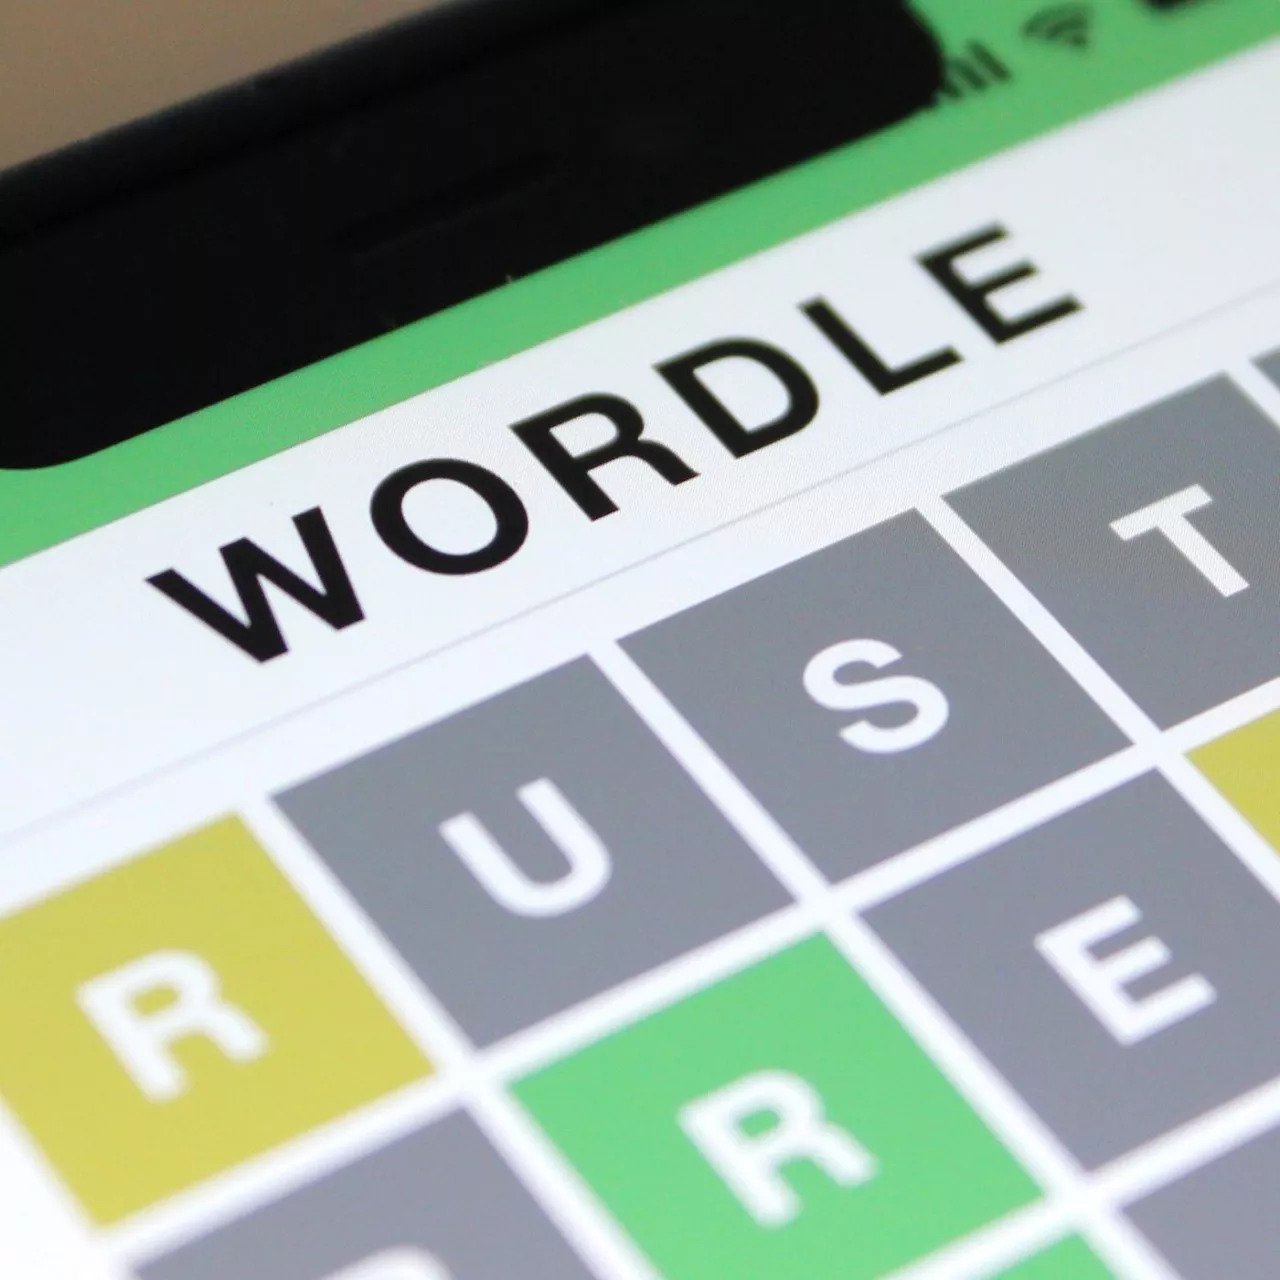 Τι είναι το Wordle και πώς έγινε No.1 παγκοσμίως